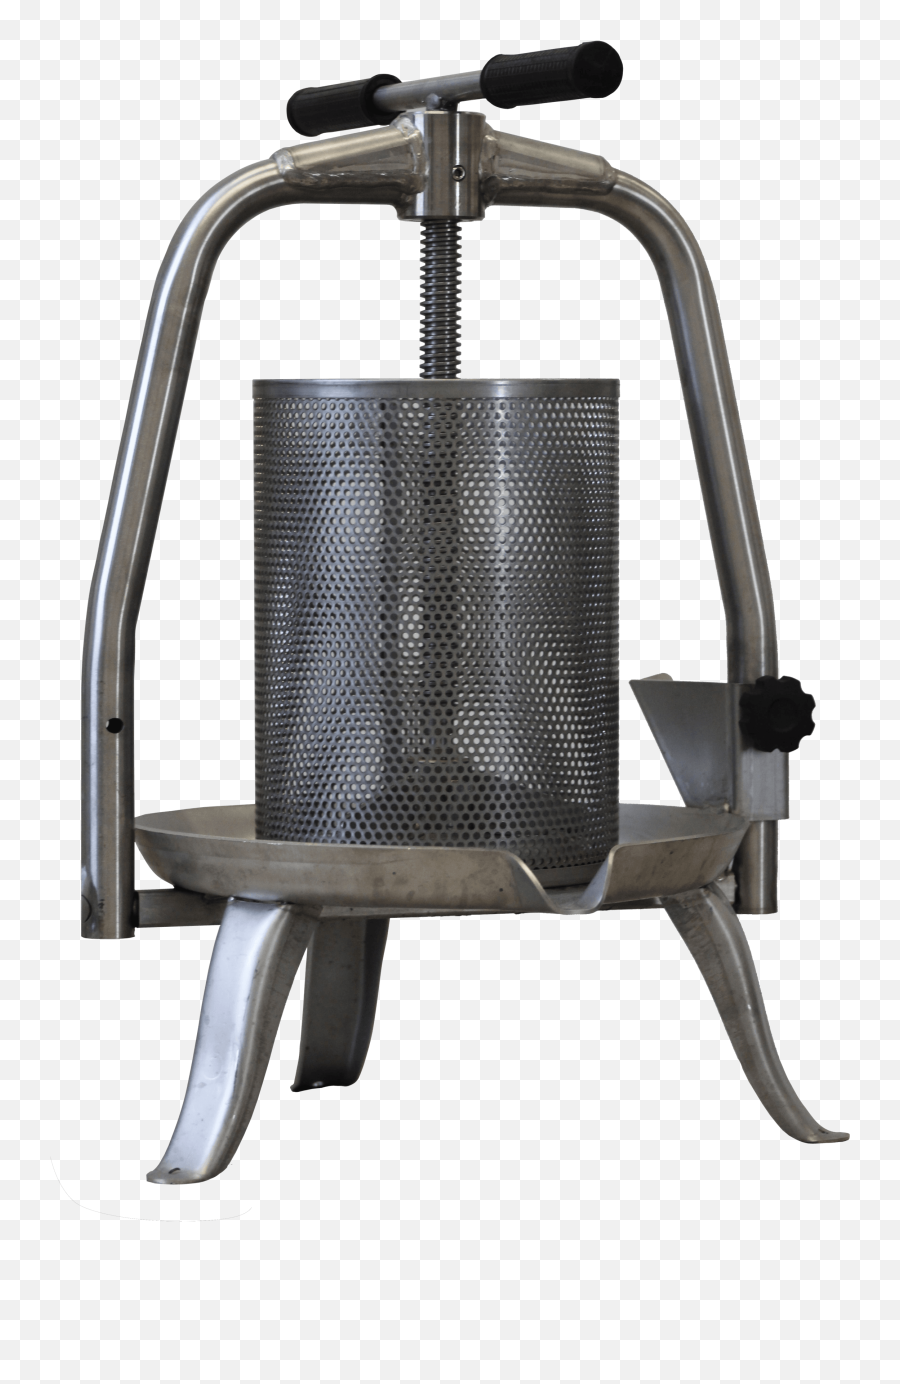 Stainless Steel Manual Press - Rocking Chair Emoji,Rocking Chair Emoji